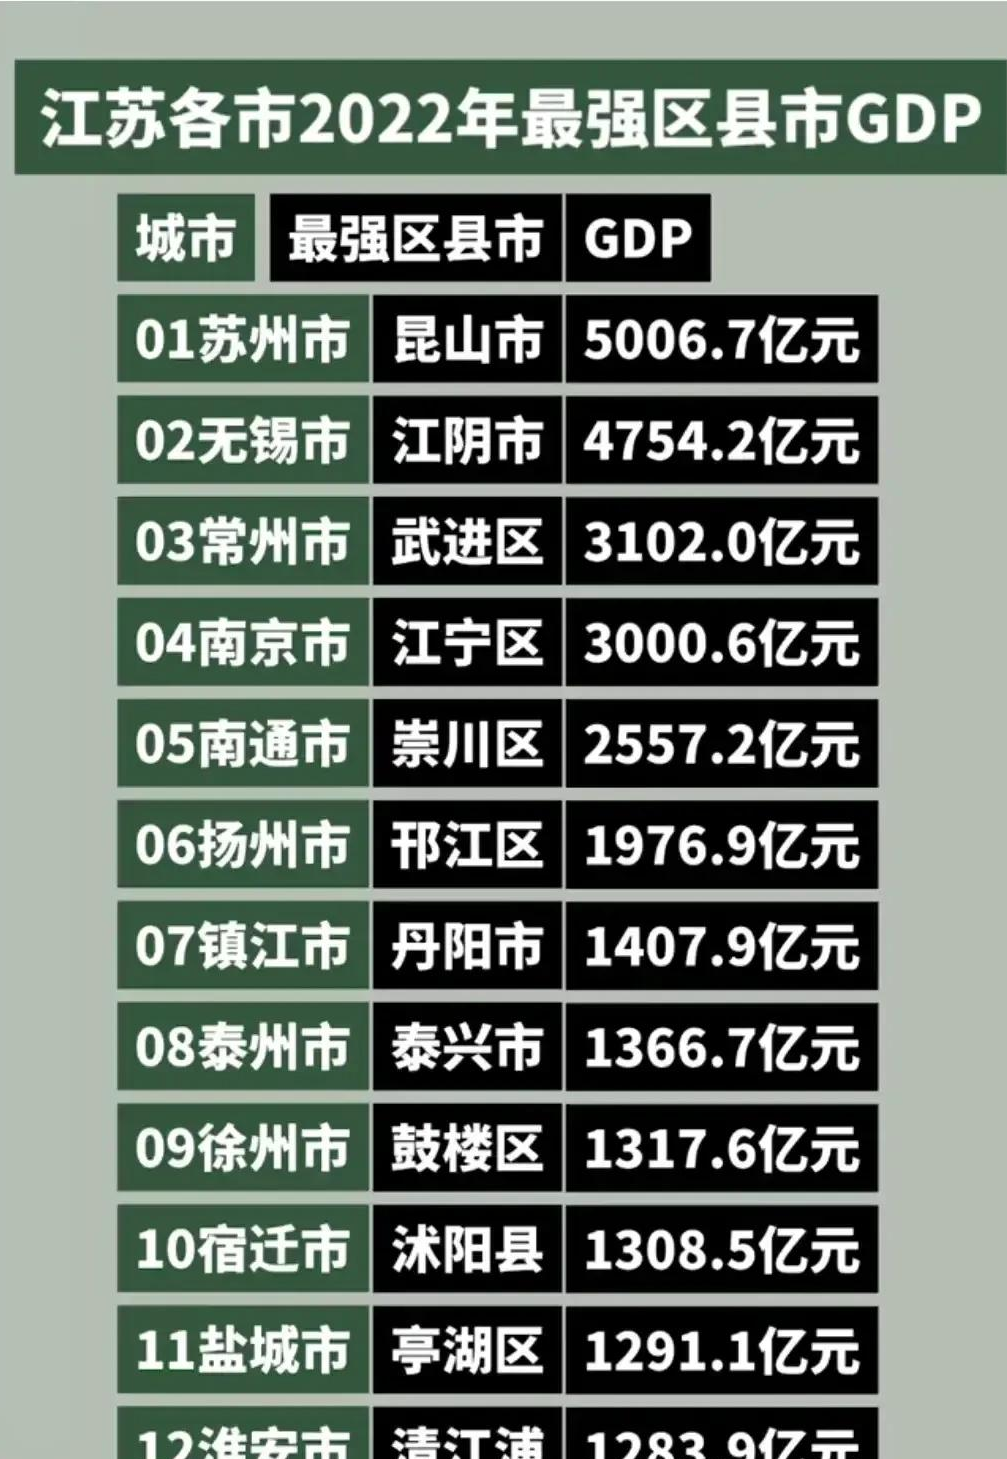 江苏各市县经济实力排行榜苏州昆山GDP总量居第一